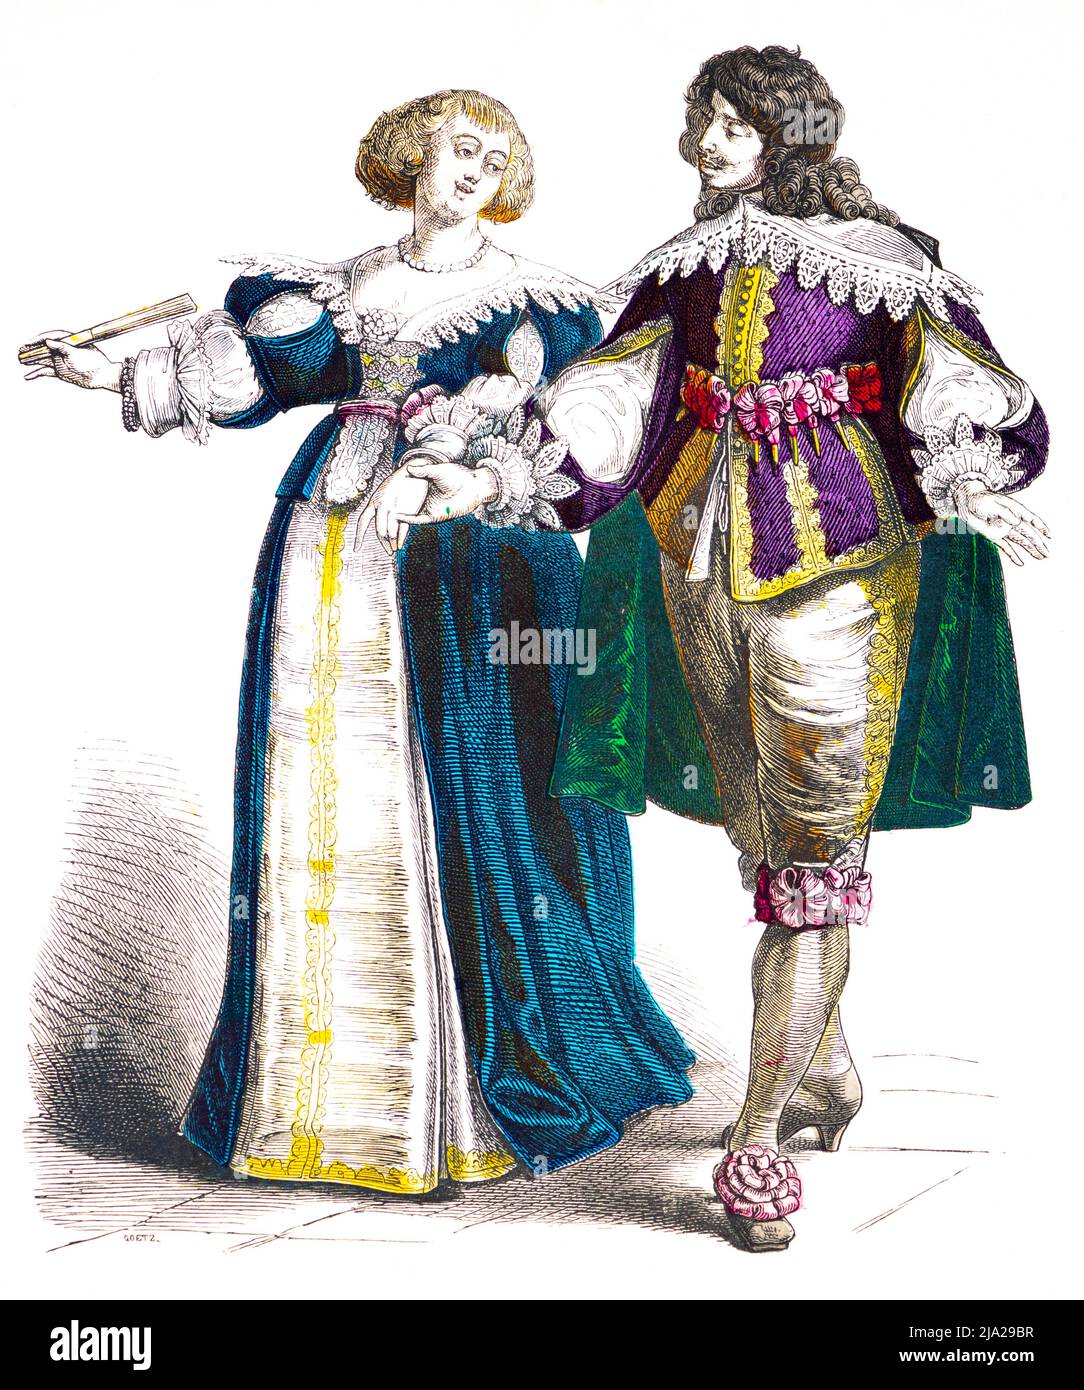 Muenchener Bilderbogen, costumi, Francia, primi del 17th secolo, nobili francesi, uomo, donna, elegante, accappatoio, ritratto, illustrazione storica colorata Foto Stock